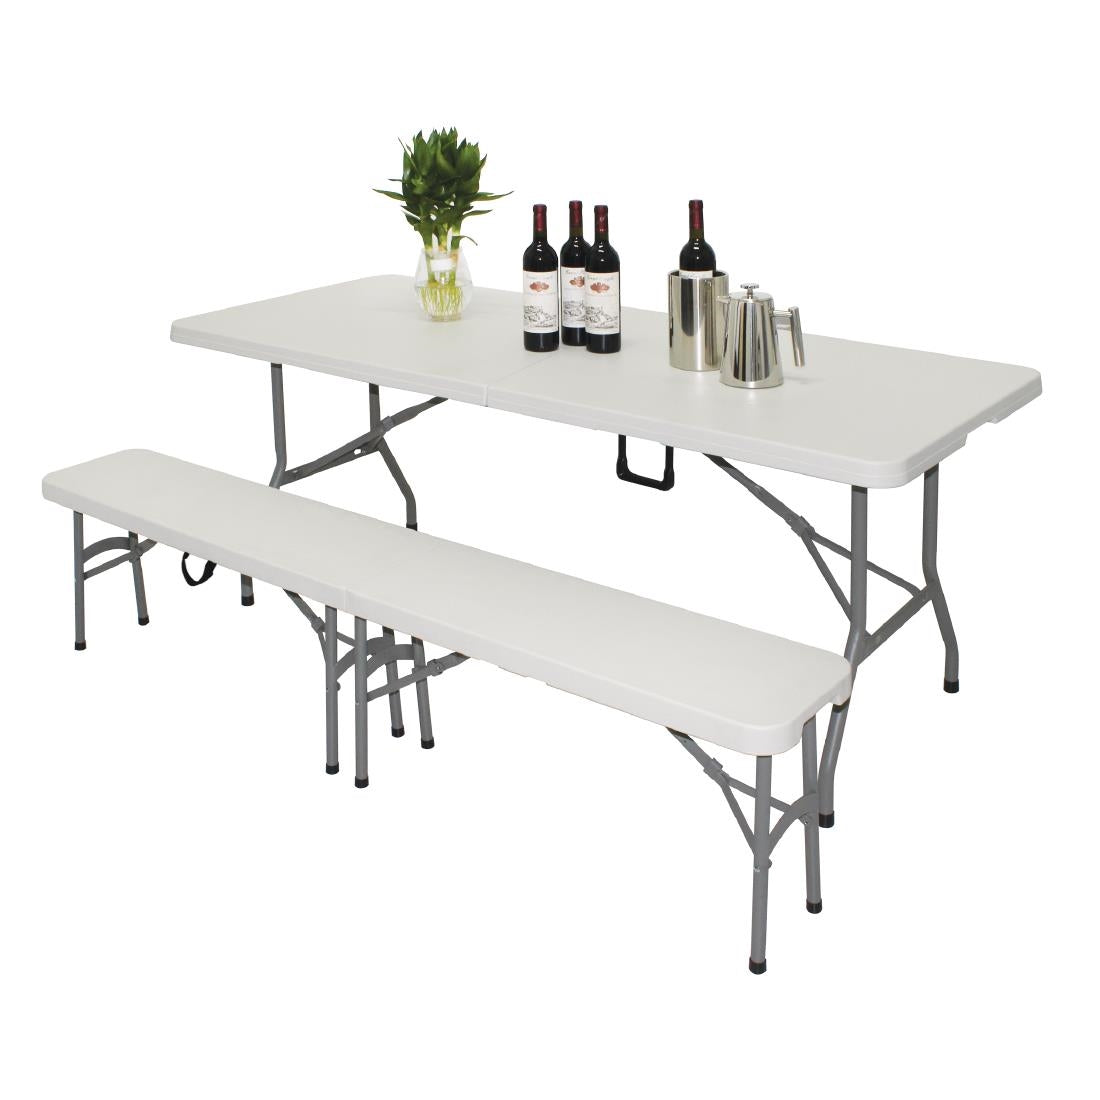 Bolero Rectangular Centre Folding Table White (Single) JD Catering Equipment Solutions Ltd